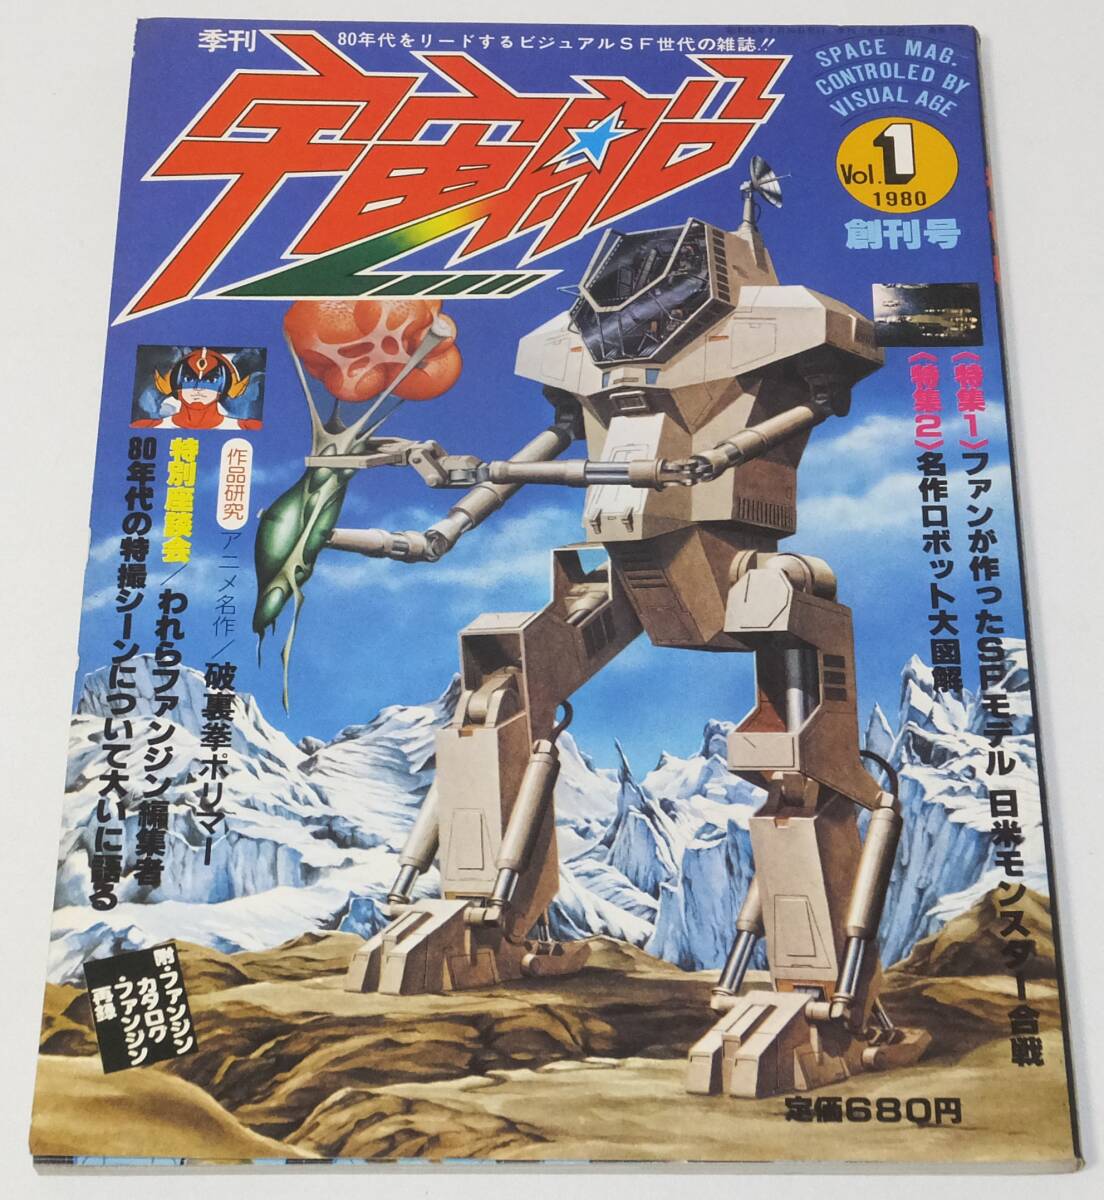 ★季刊 宇宙船 Vol.1 1980 創刊号 朝日ソノラマ★の画像1